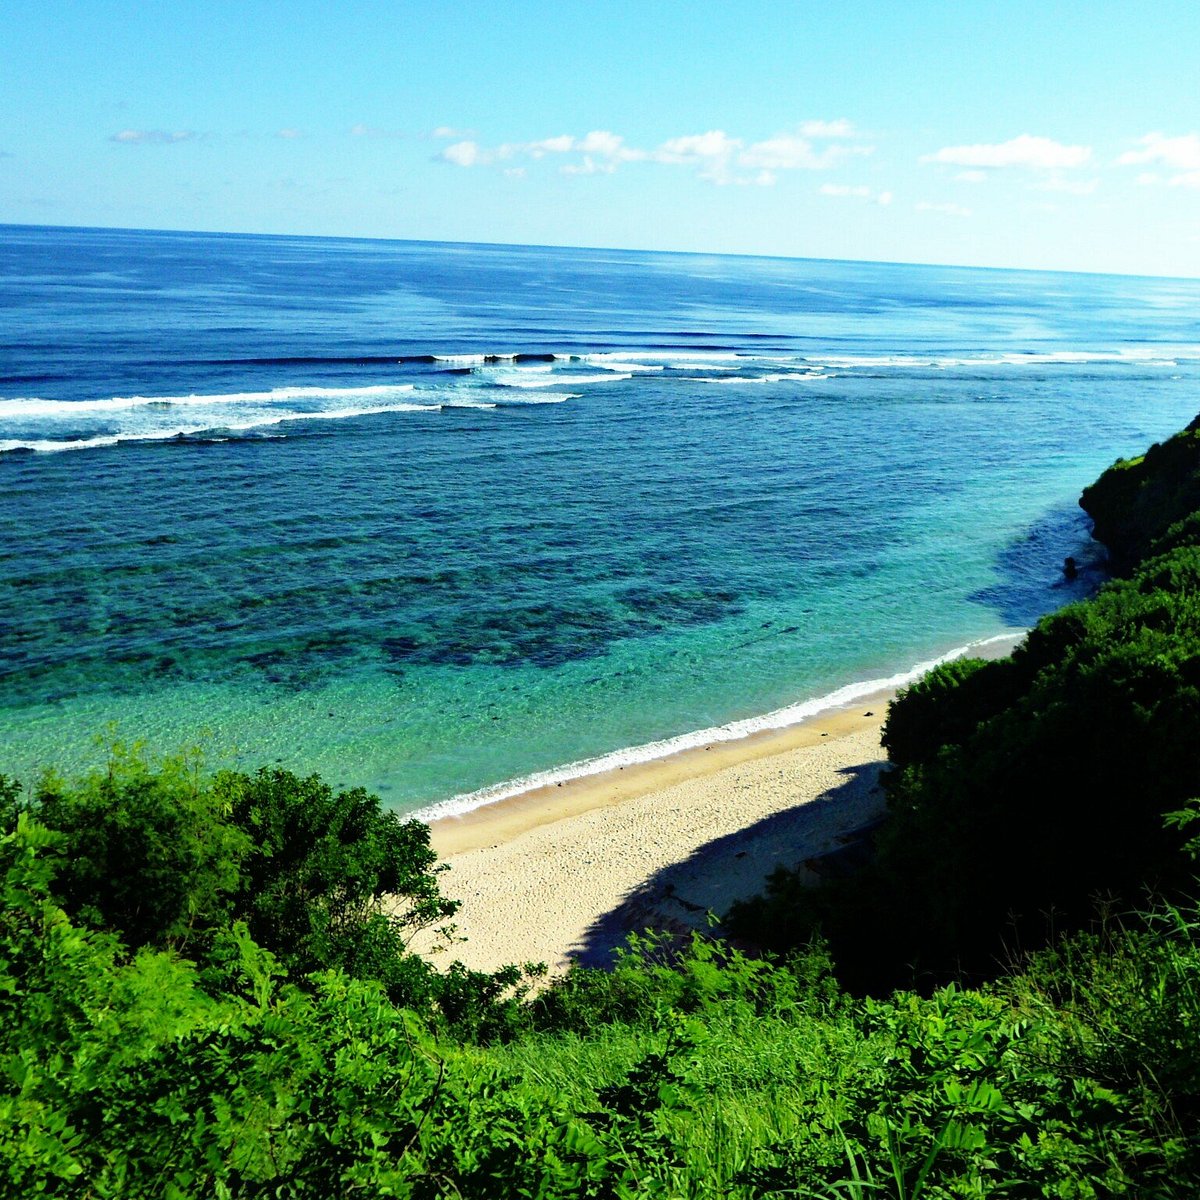 Pantai Gunung Payung Semenanjung Nusa Dua Indonesia Review Tripadvisor